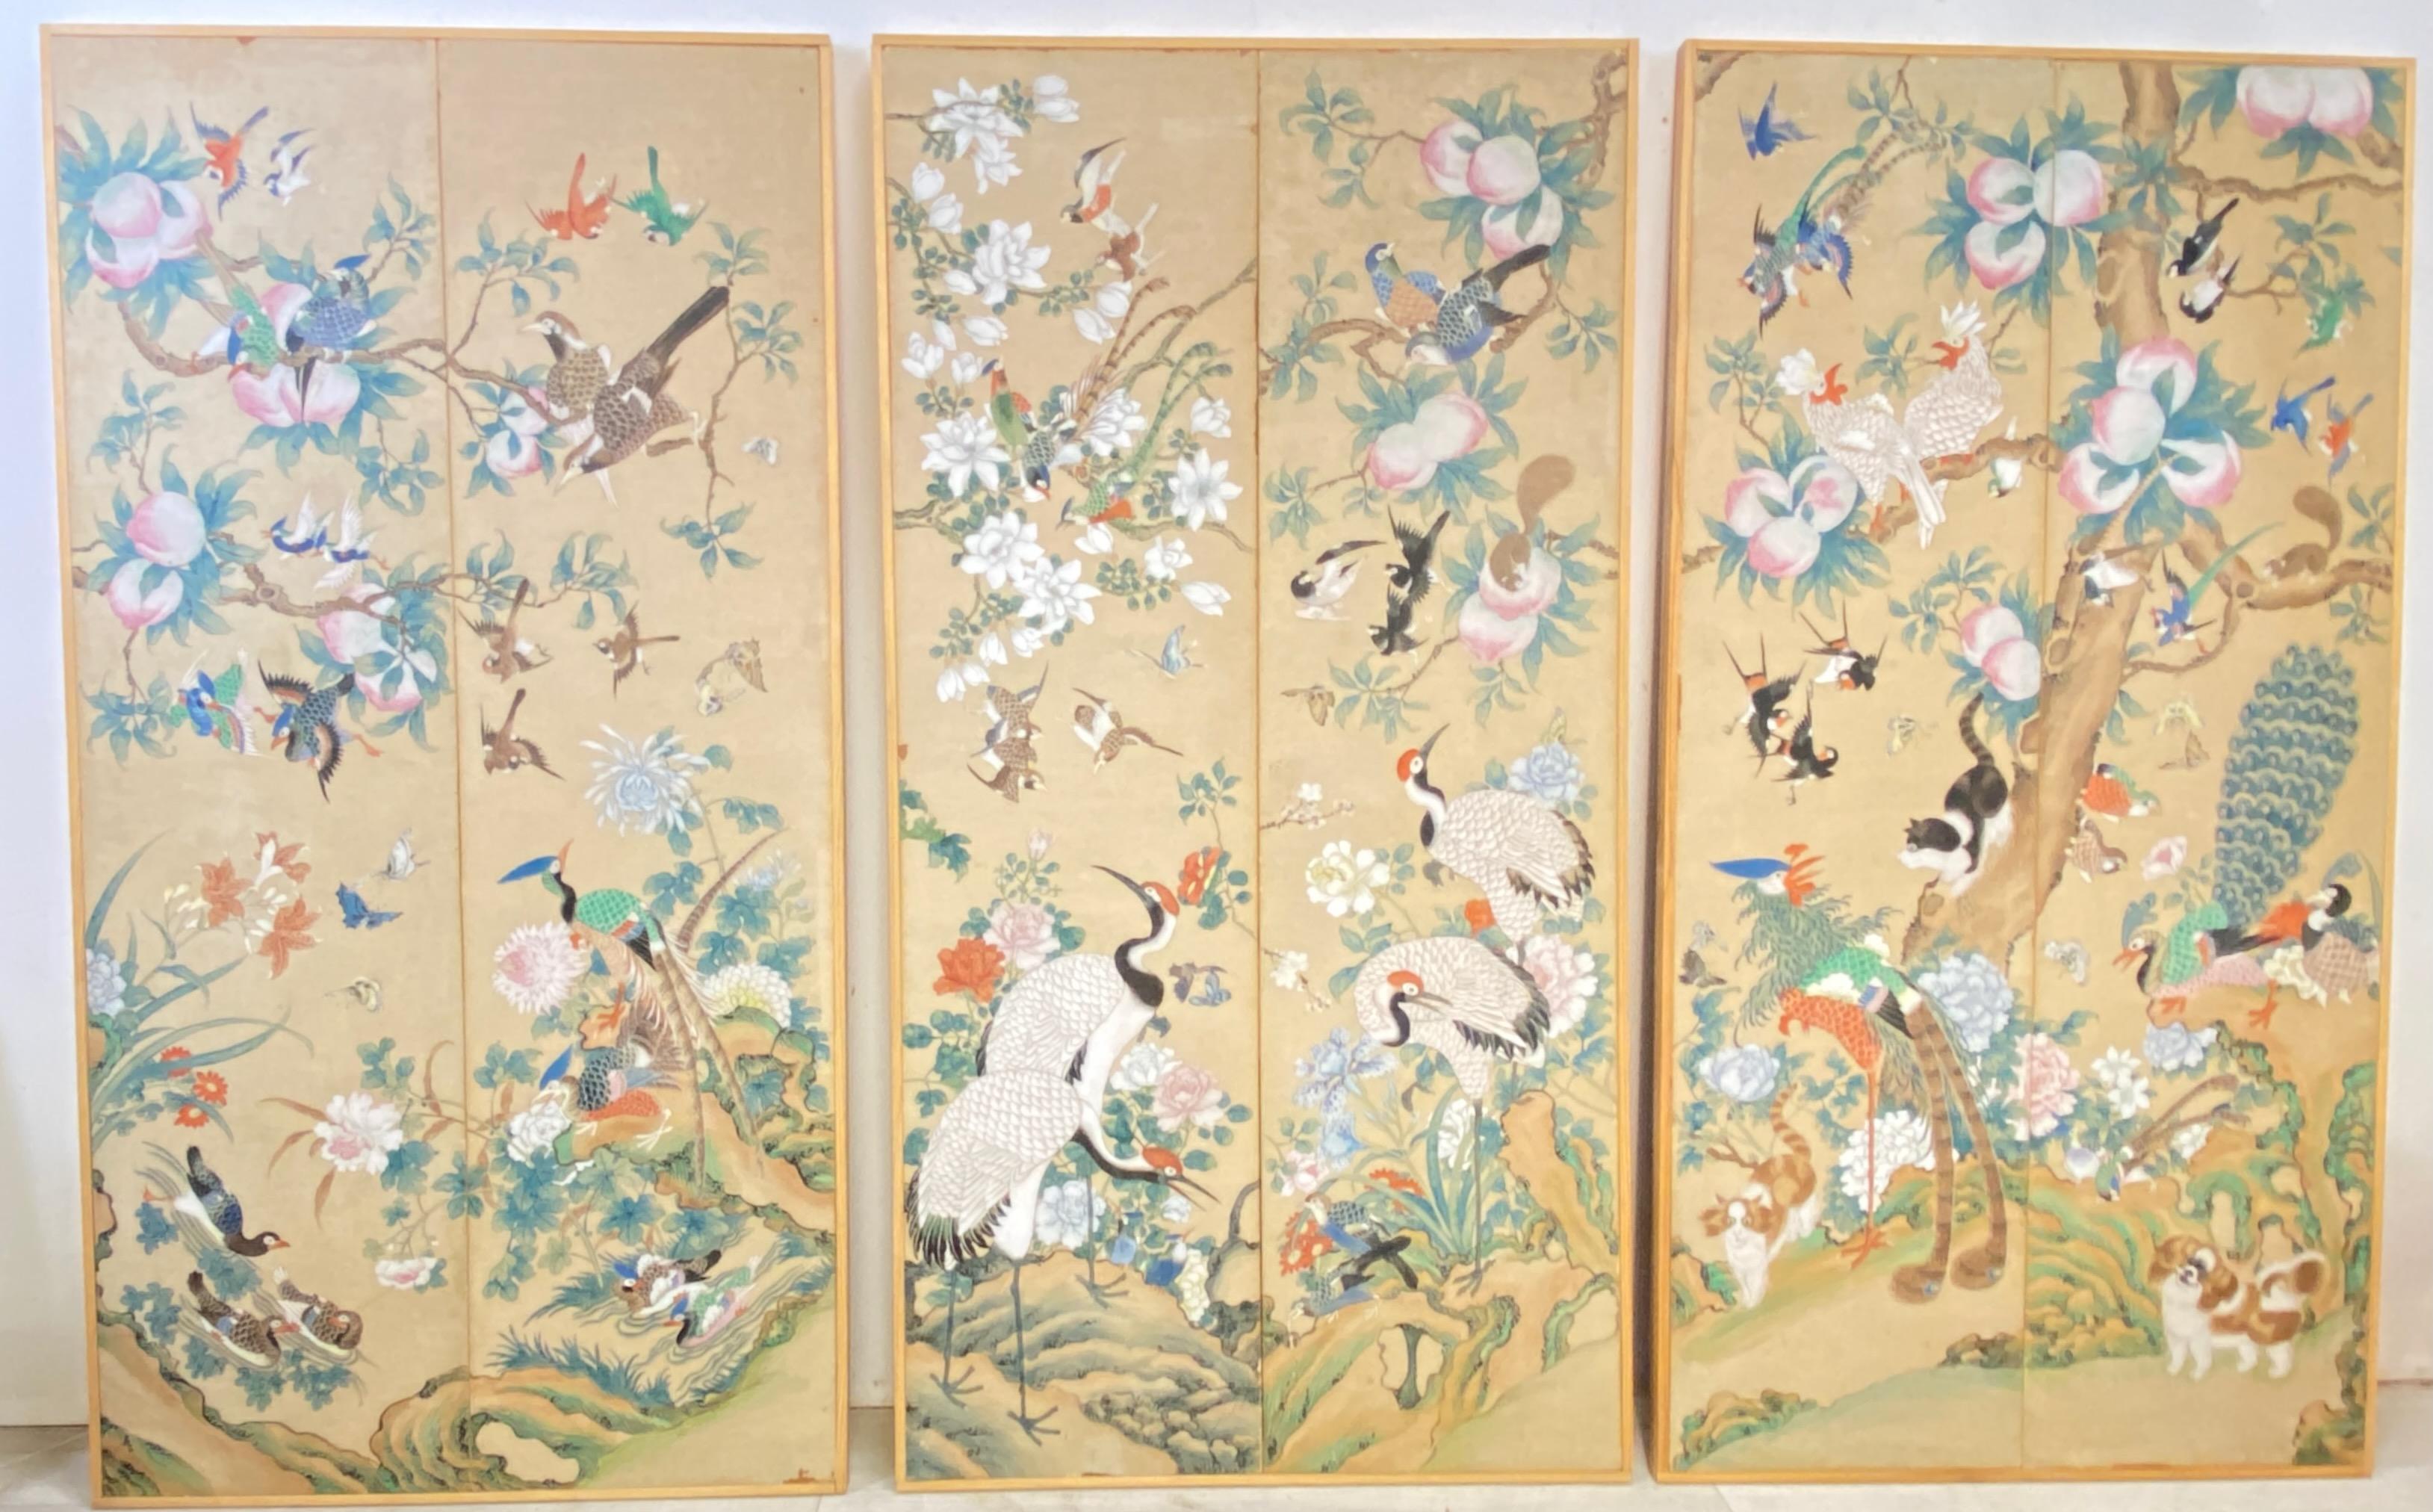 Un ensemble de trois panneaux de papier peint montés et peints à la main dans des cadres en bois simples.
Scènes magnifiquement peintes et élaborées avec des oiseaux, des fleurs, des papillons, des chats, des chiens, des écureuils, des fruits et du